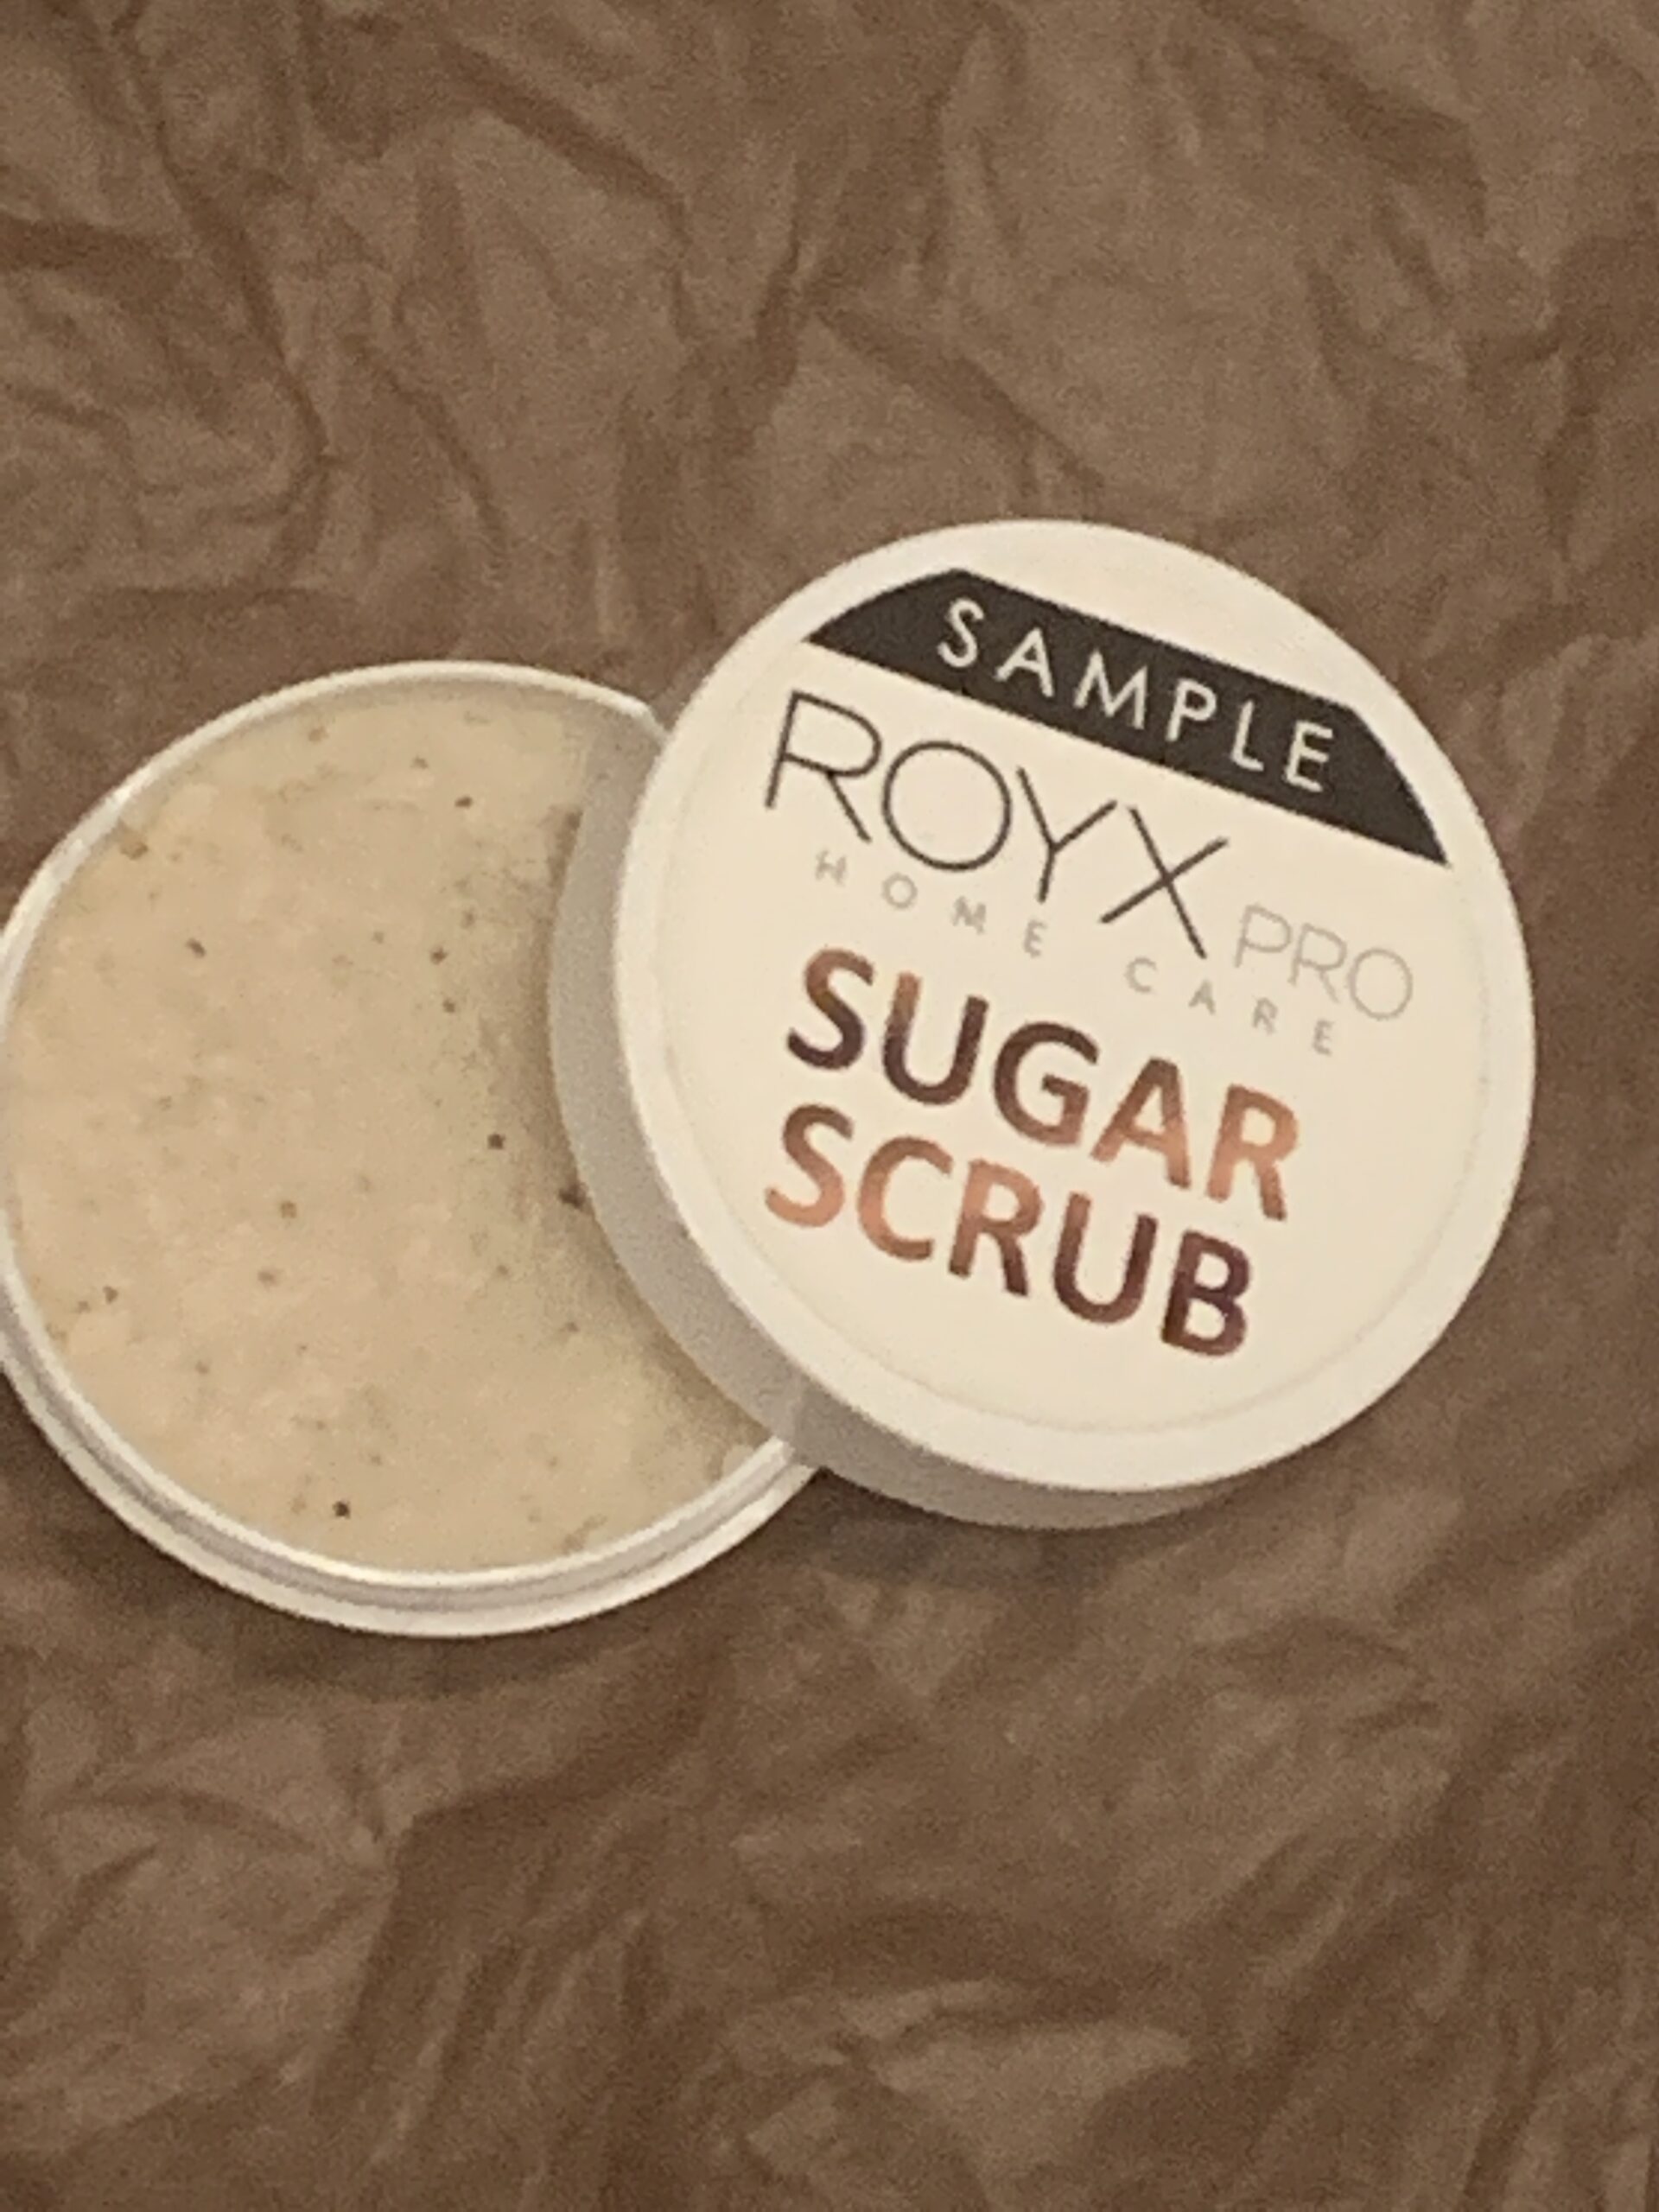 Royx sugar scrub